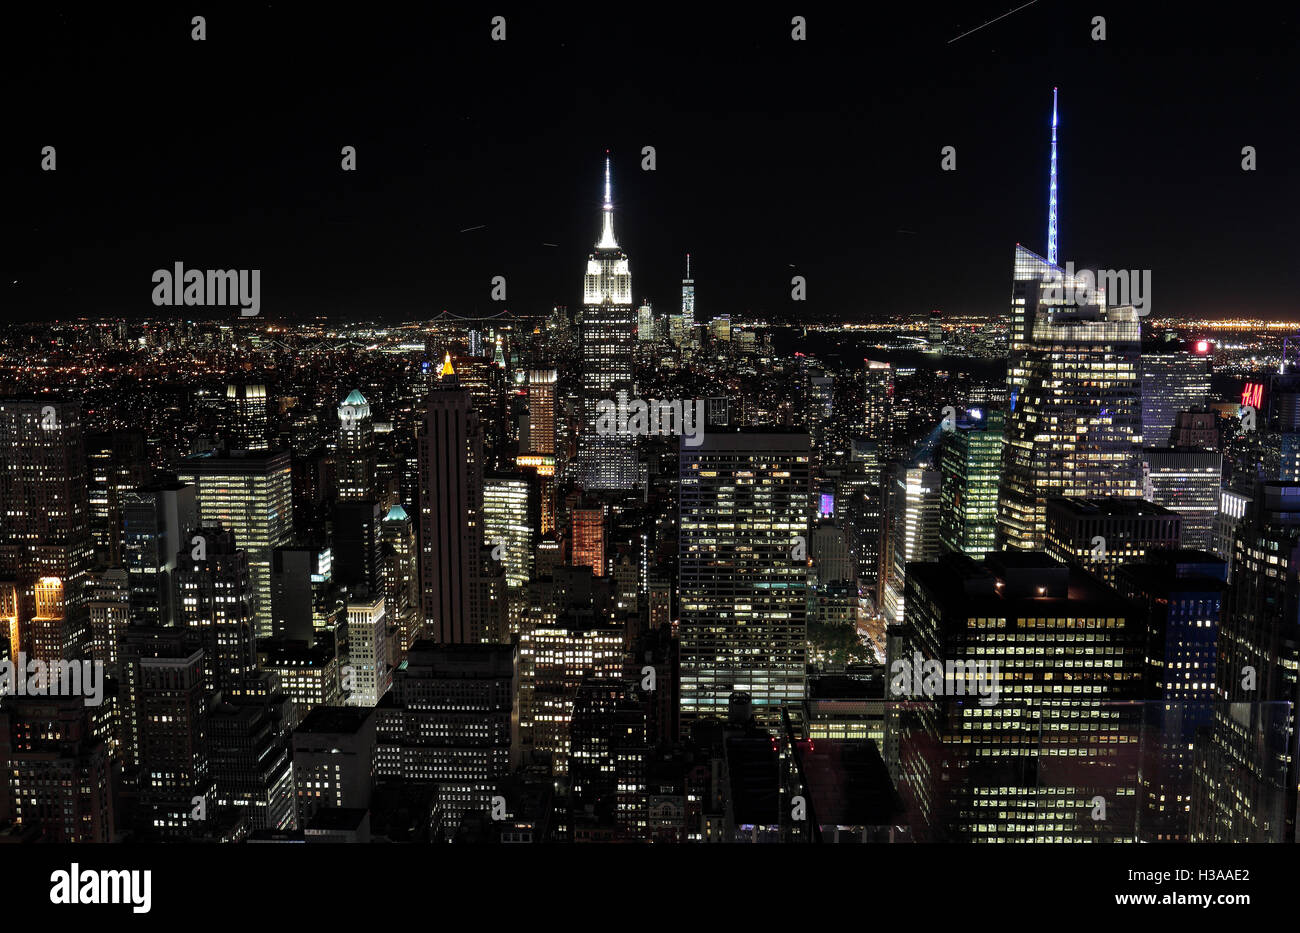 Luftbild von der "Top of the World" Aussichtsplattform auf dem Empire State Building & Innenstadt von Manhattan, New York. Stockfoto